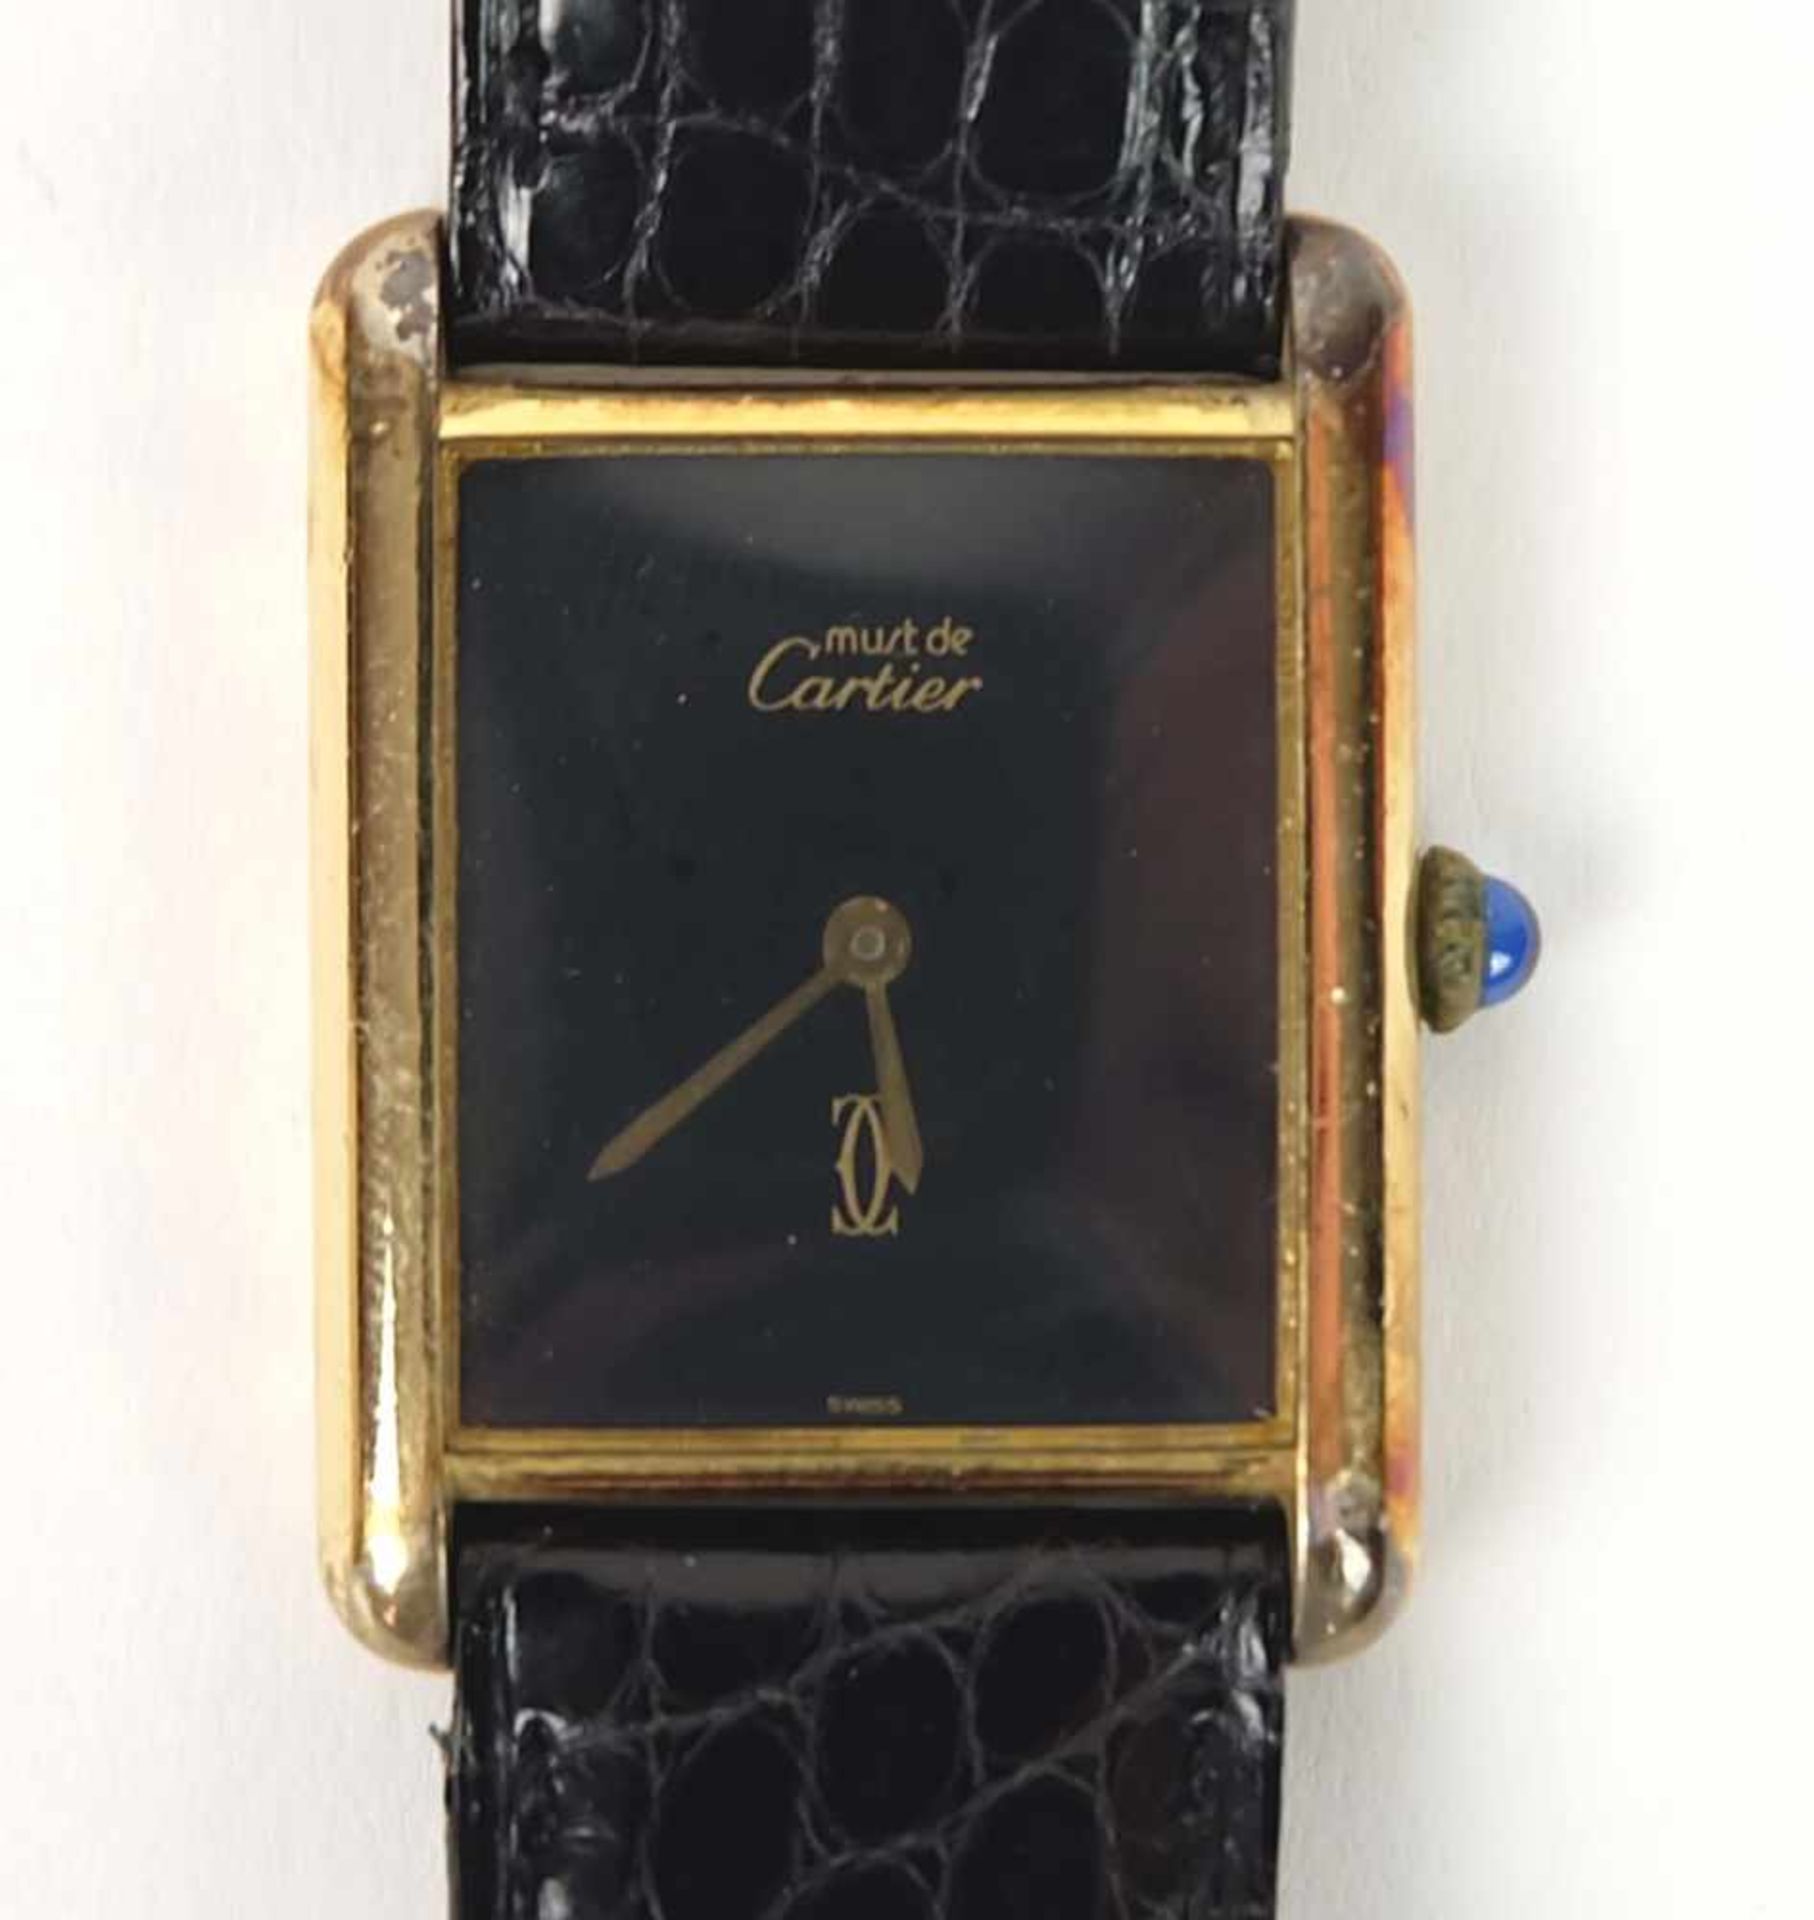 DAU, Hersteller Must de Cartier/ Paris, 925er-Silber vergoldet, entspr. Beschau, Saphircabochon,